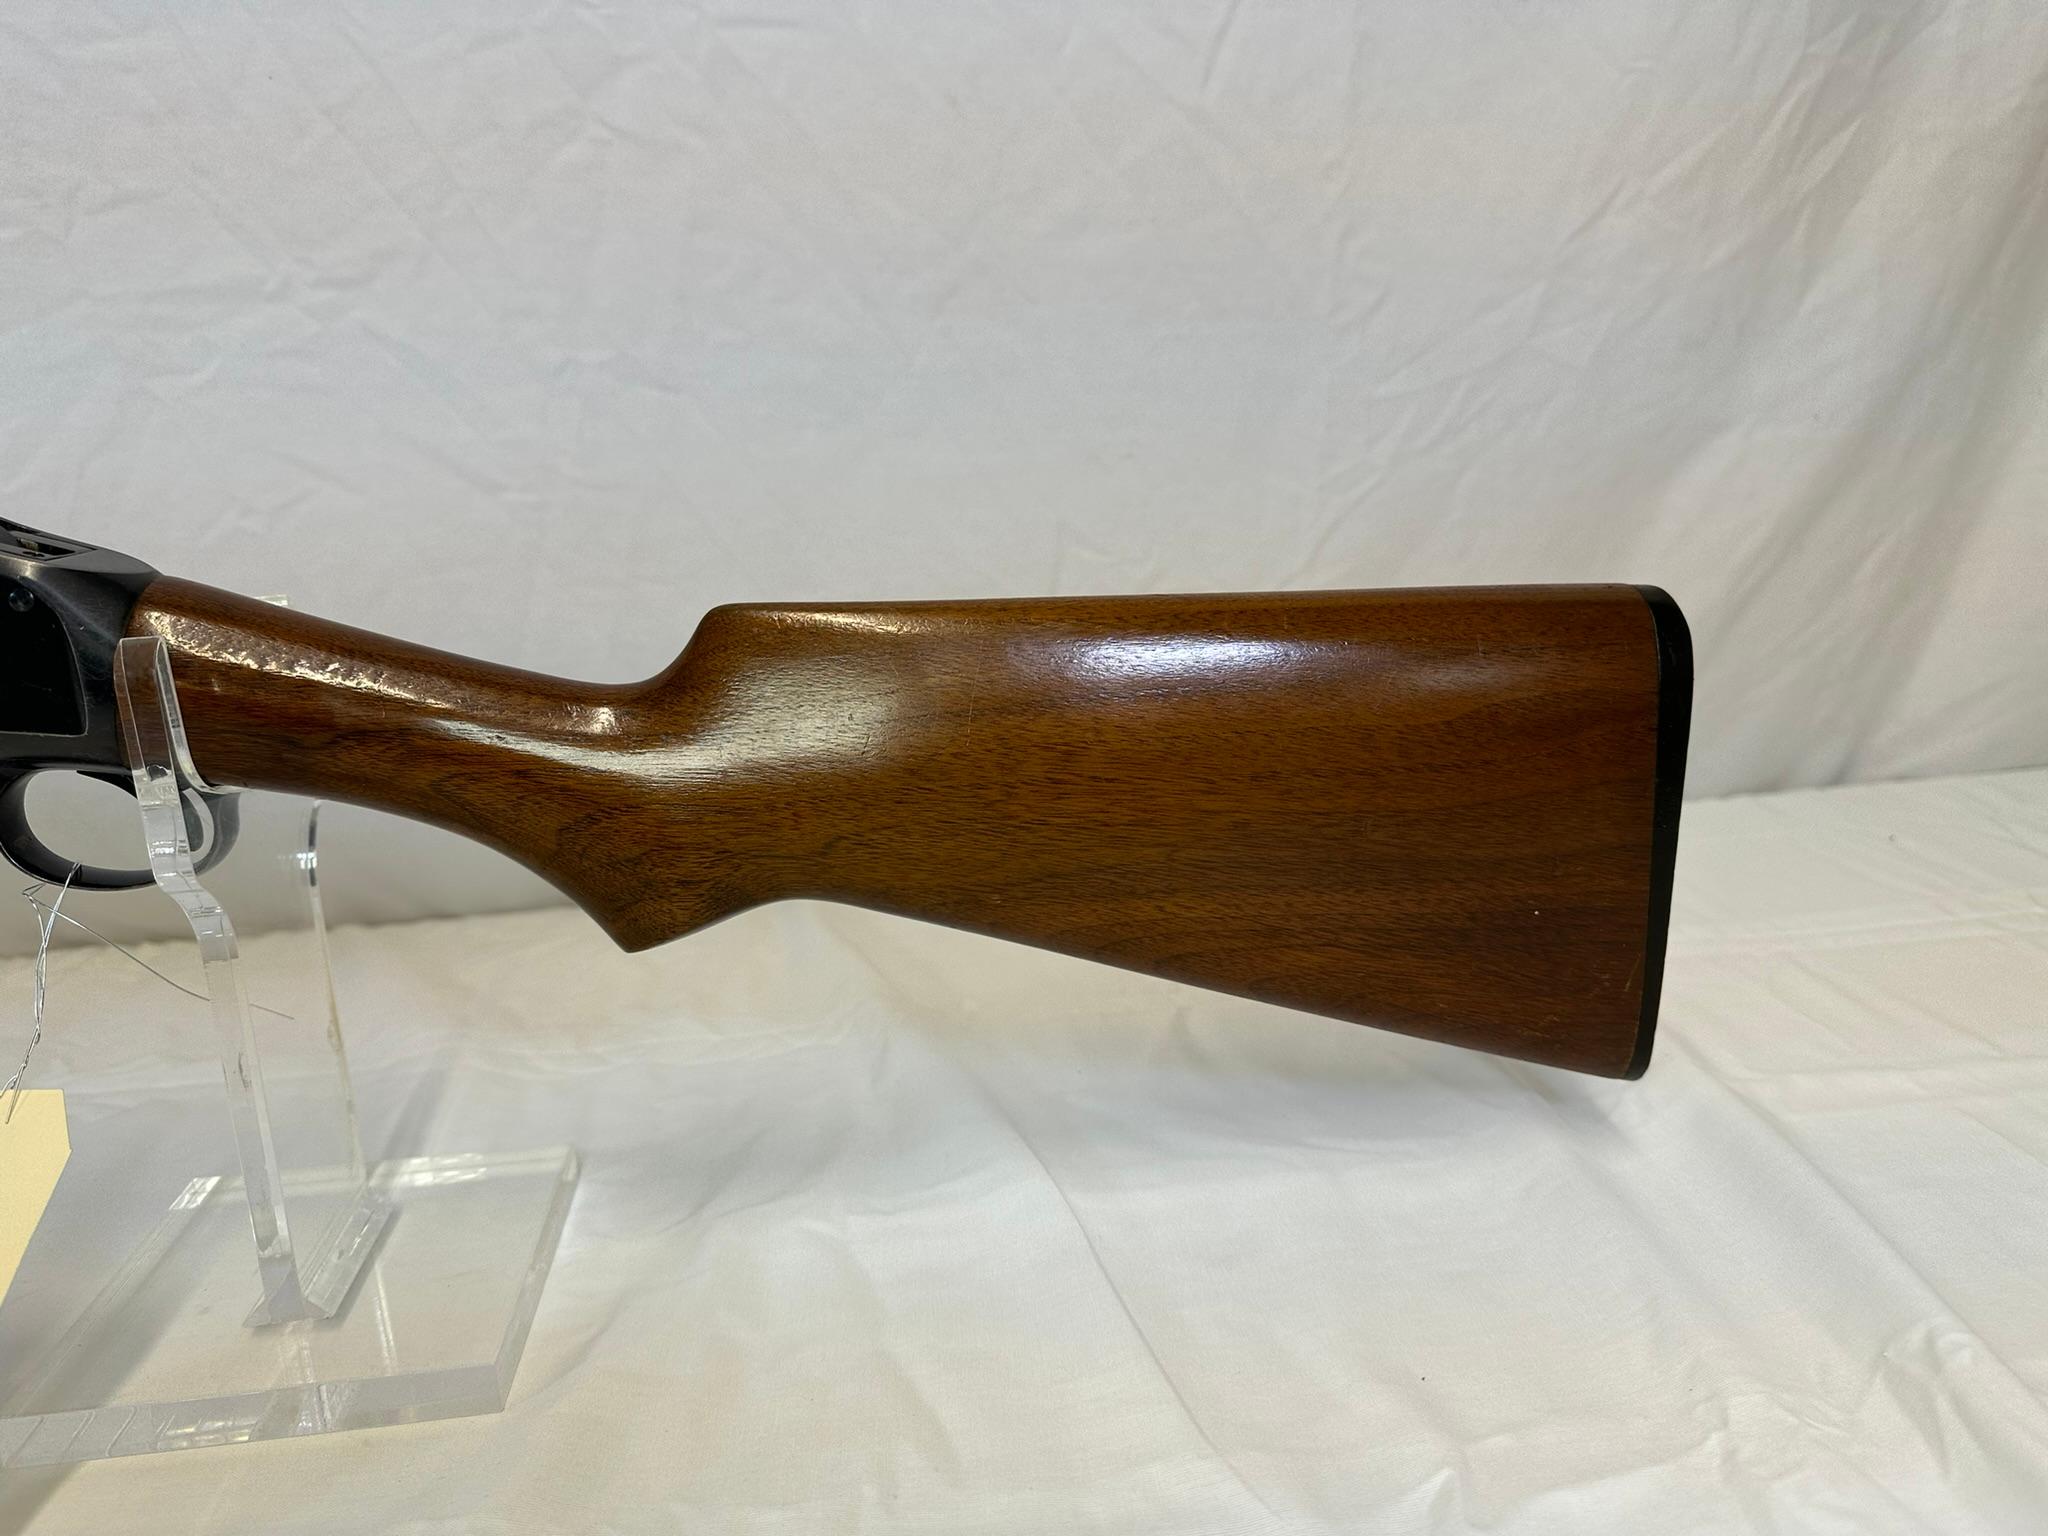 Winchester mod 97 12 ga pump shotgun